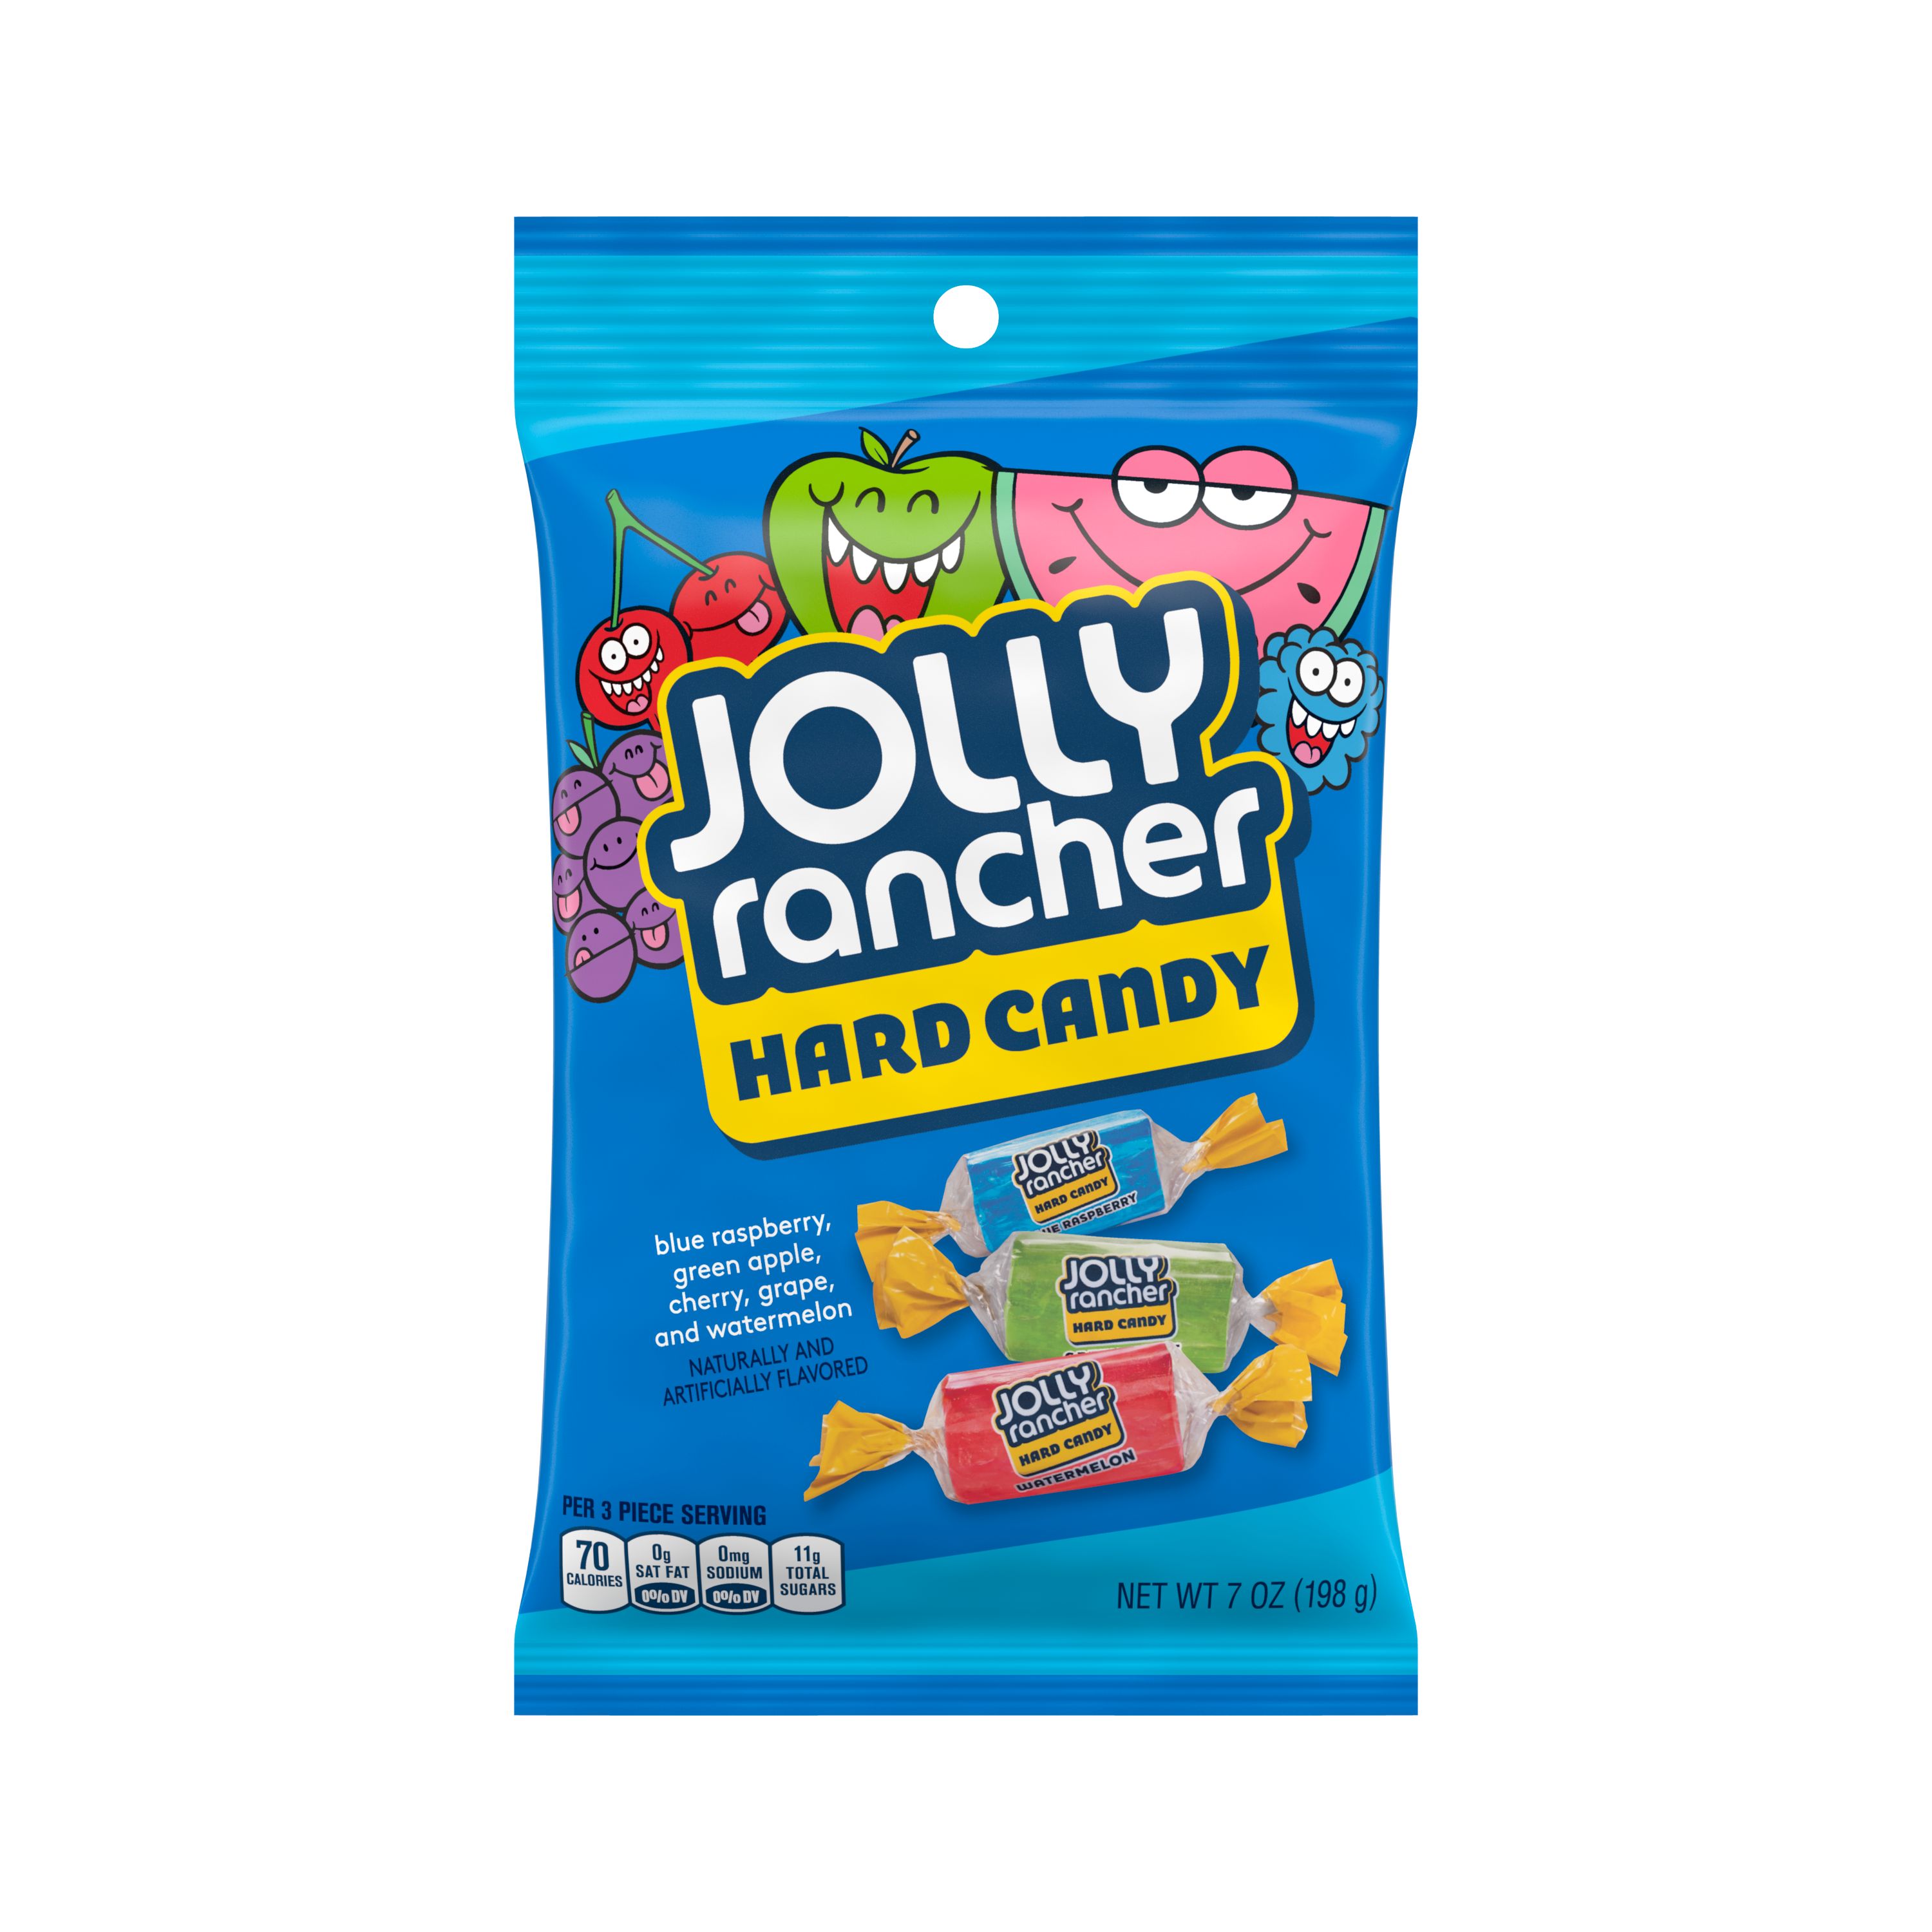 Jolly Rancher - Caramelos duros, sabores Original